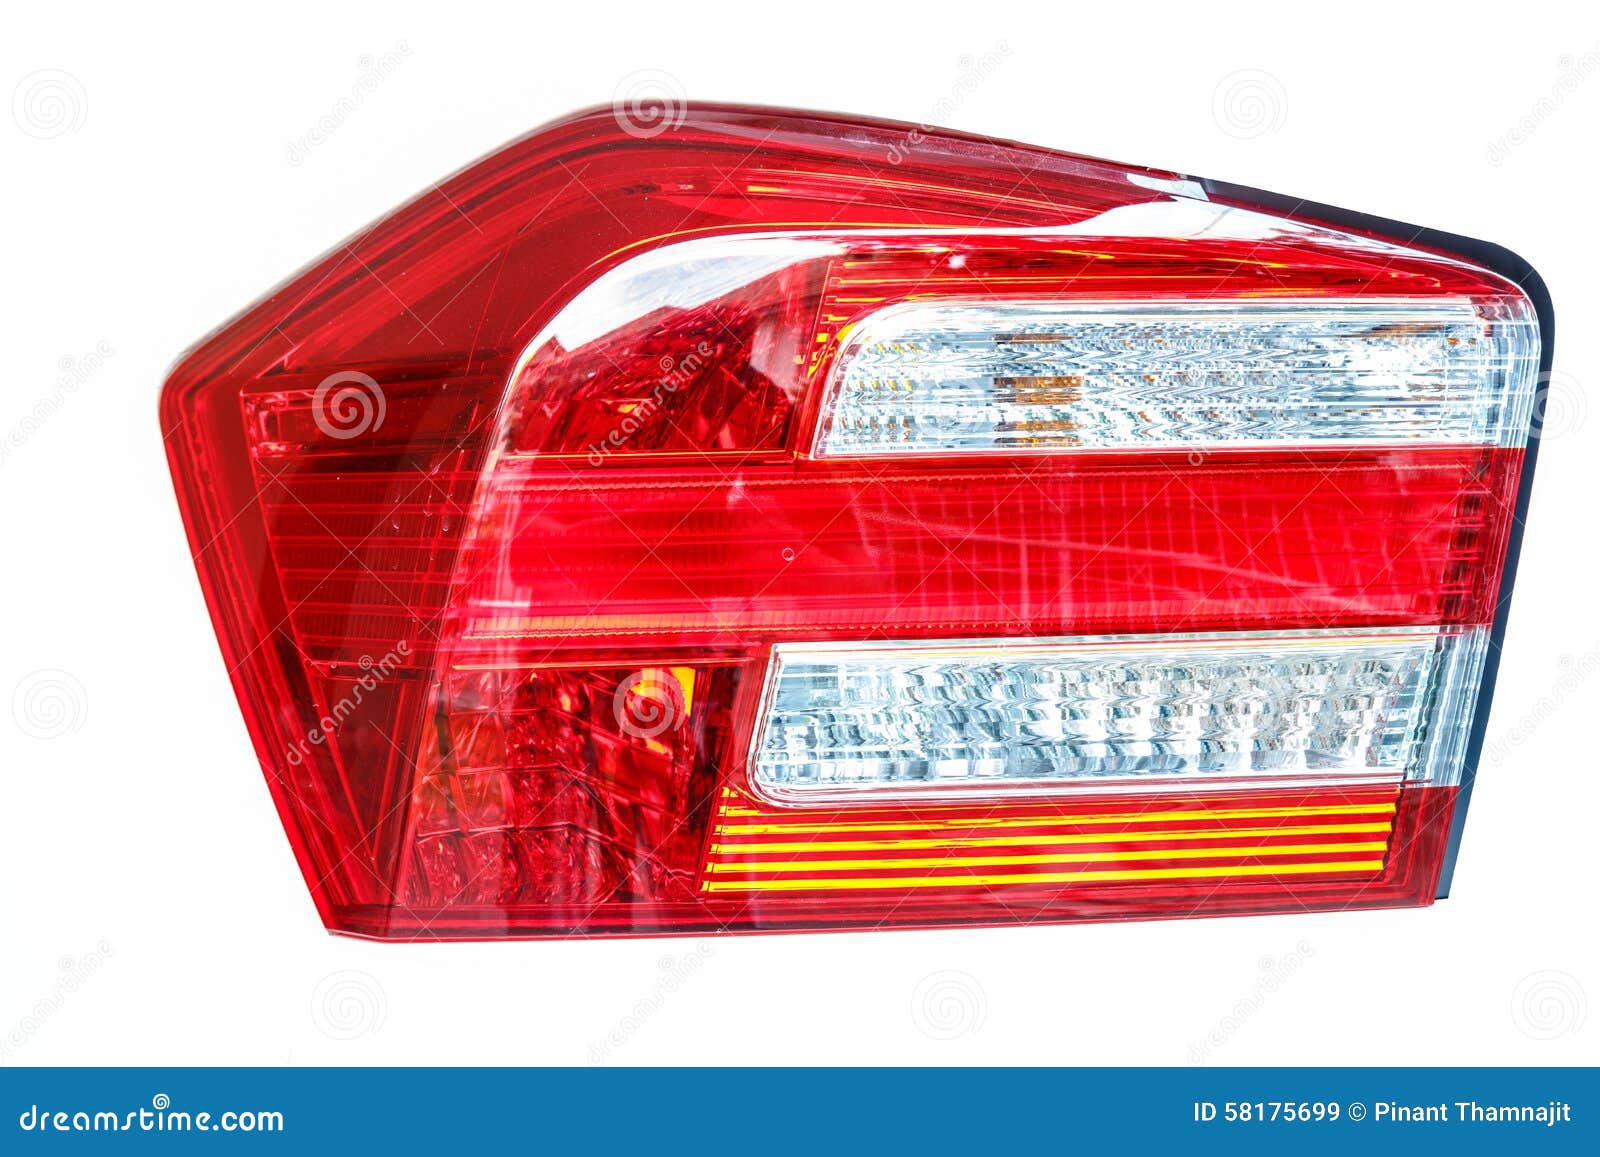 Car Back Light  Stock Image  Image Of Vehicle  Glass